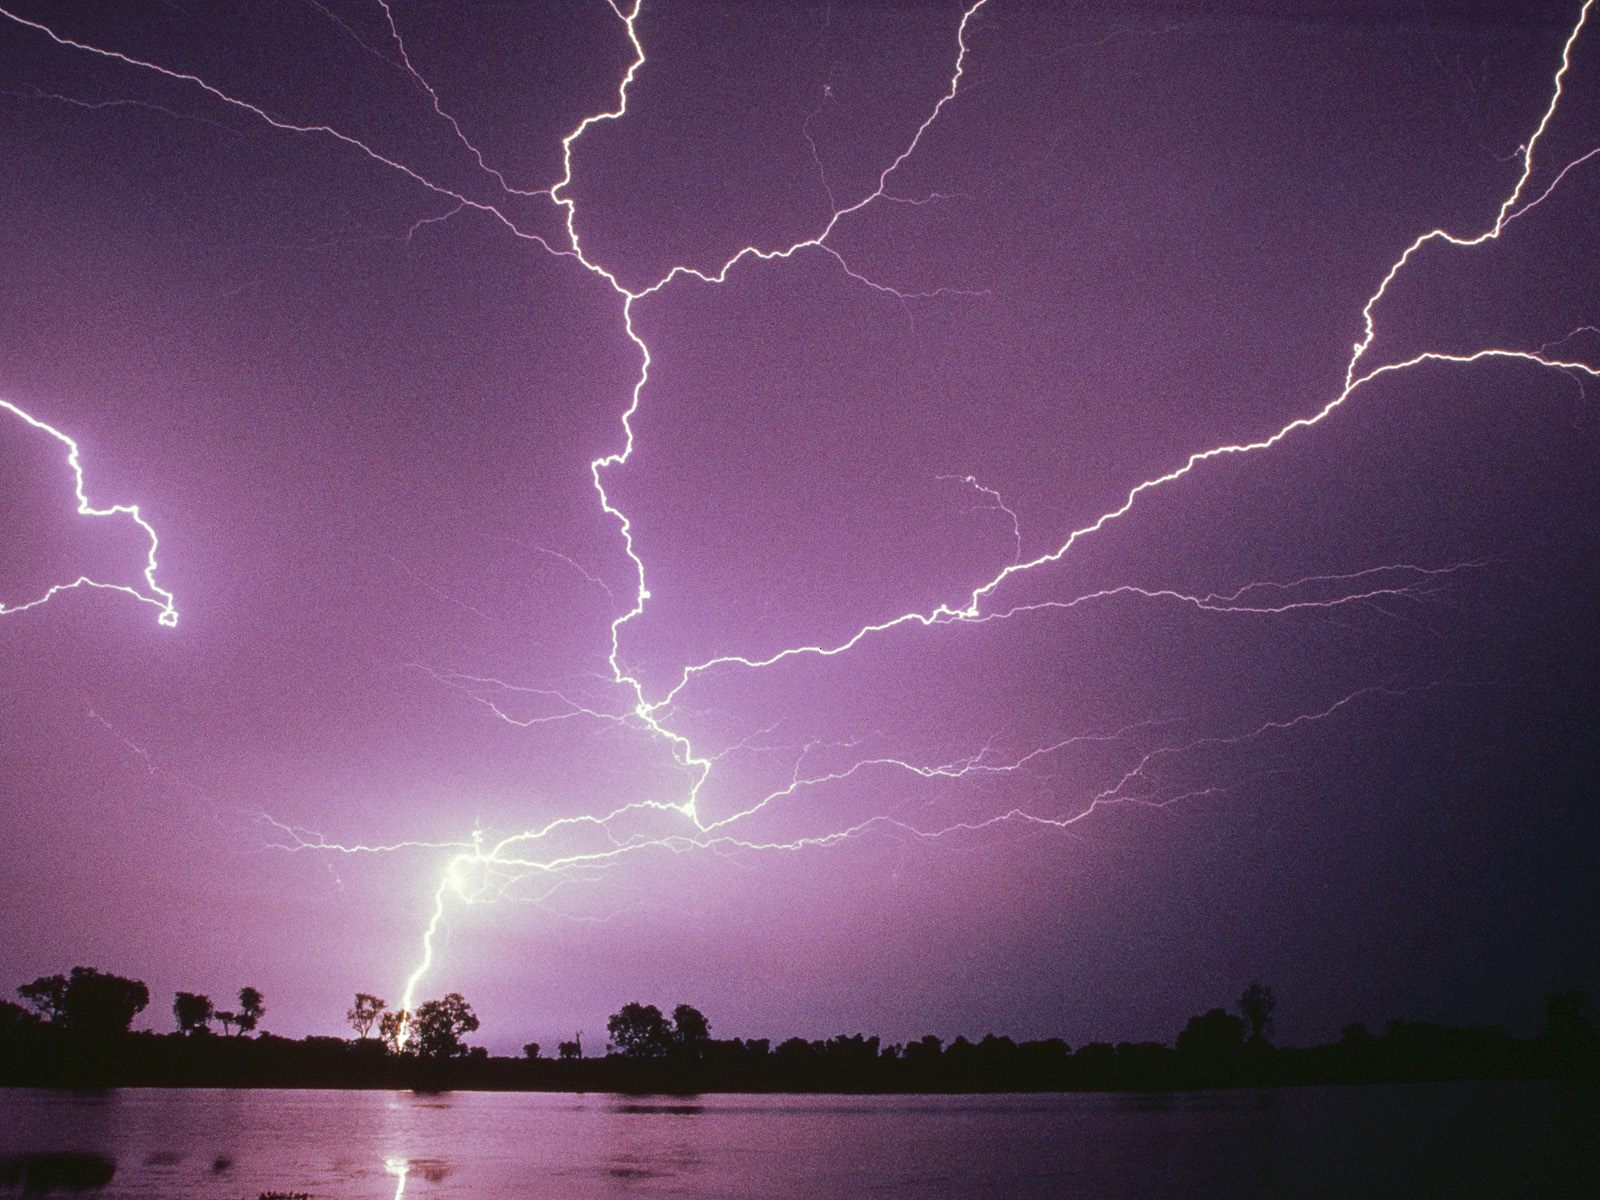 http://2.bp.blogspot.com/_HkbWdsz-H8g/S74EImI7NjI/AAAAAAAAIis/H0pTbuYENXU/s1600/Electrical+Storm,+Kakadu+National+Park,+Australia.jpg